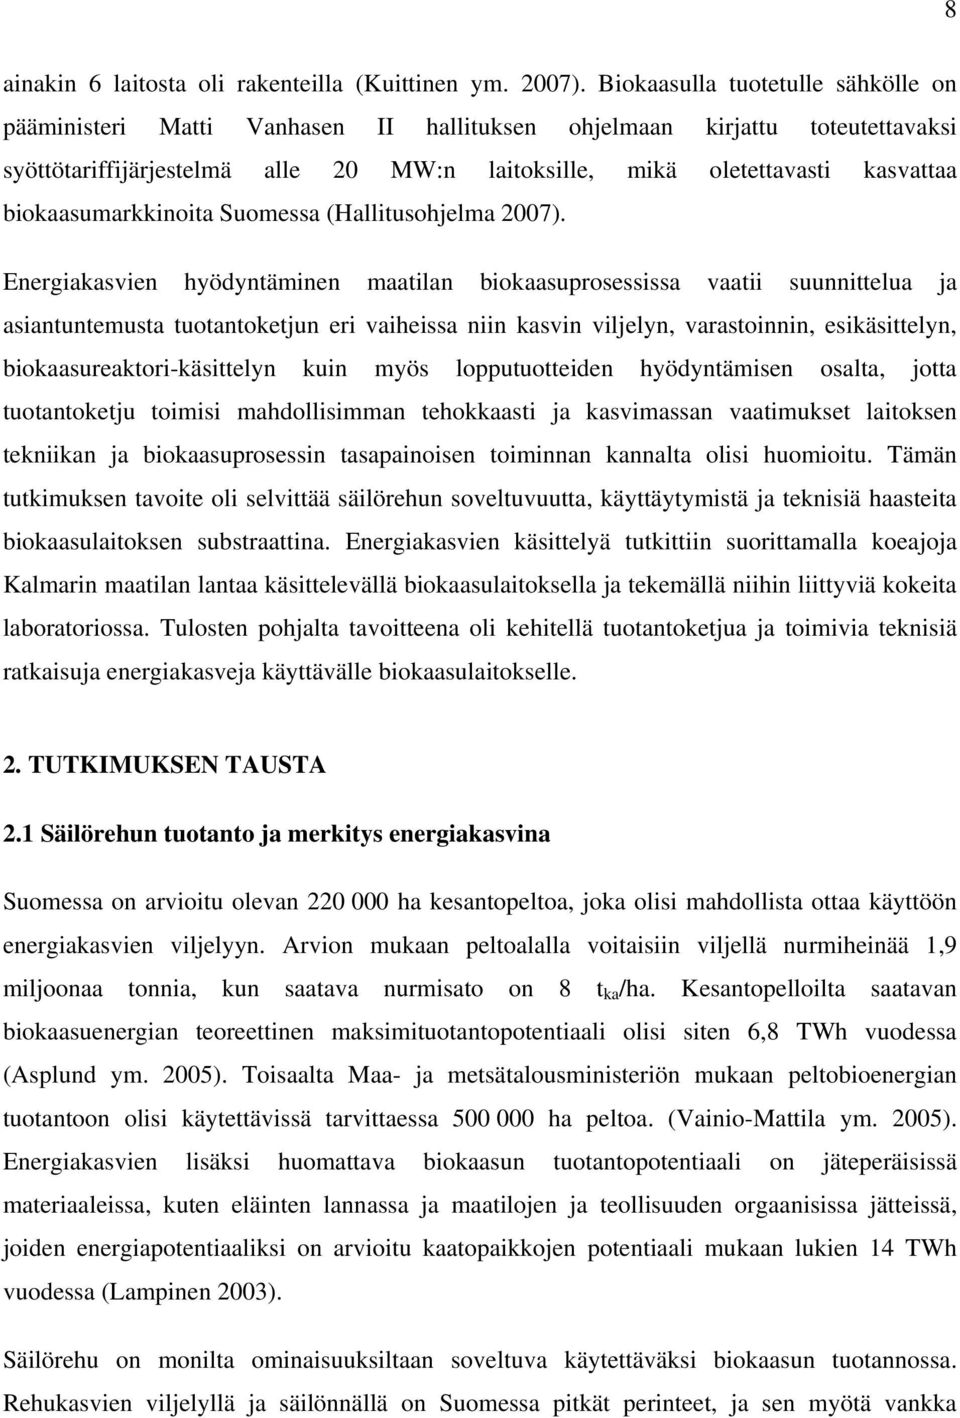 biokaasumarkkinoita Suomessa (Hallitusohjelma 2007).